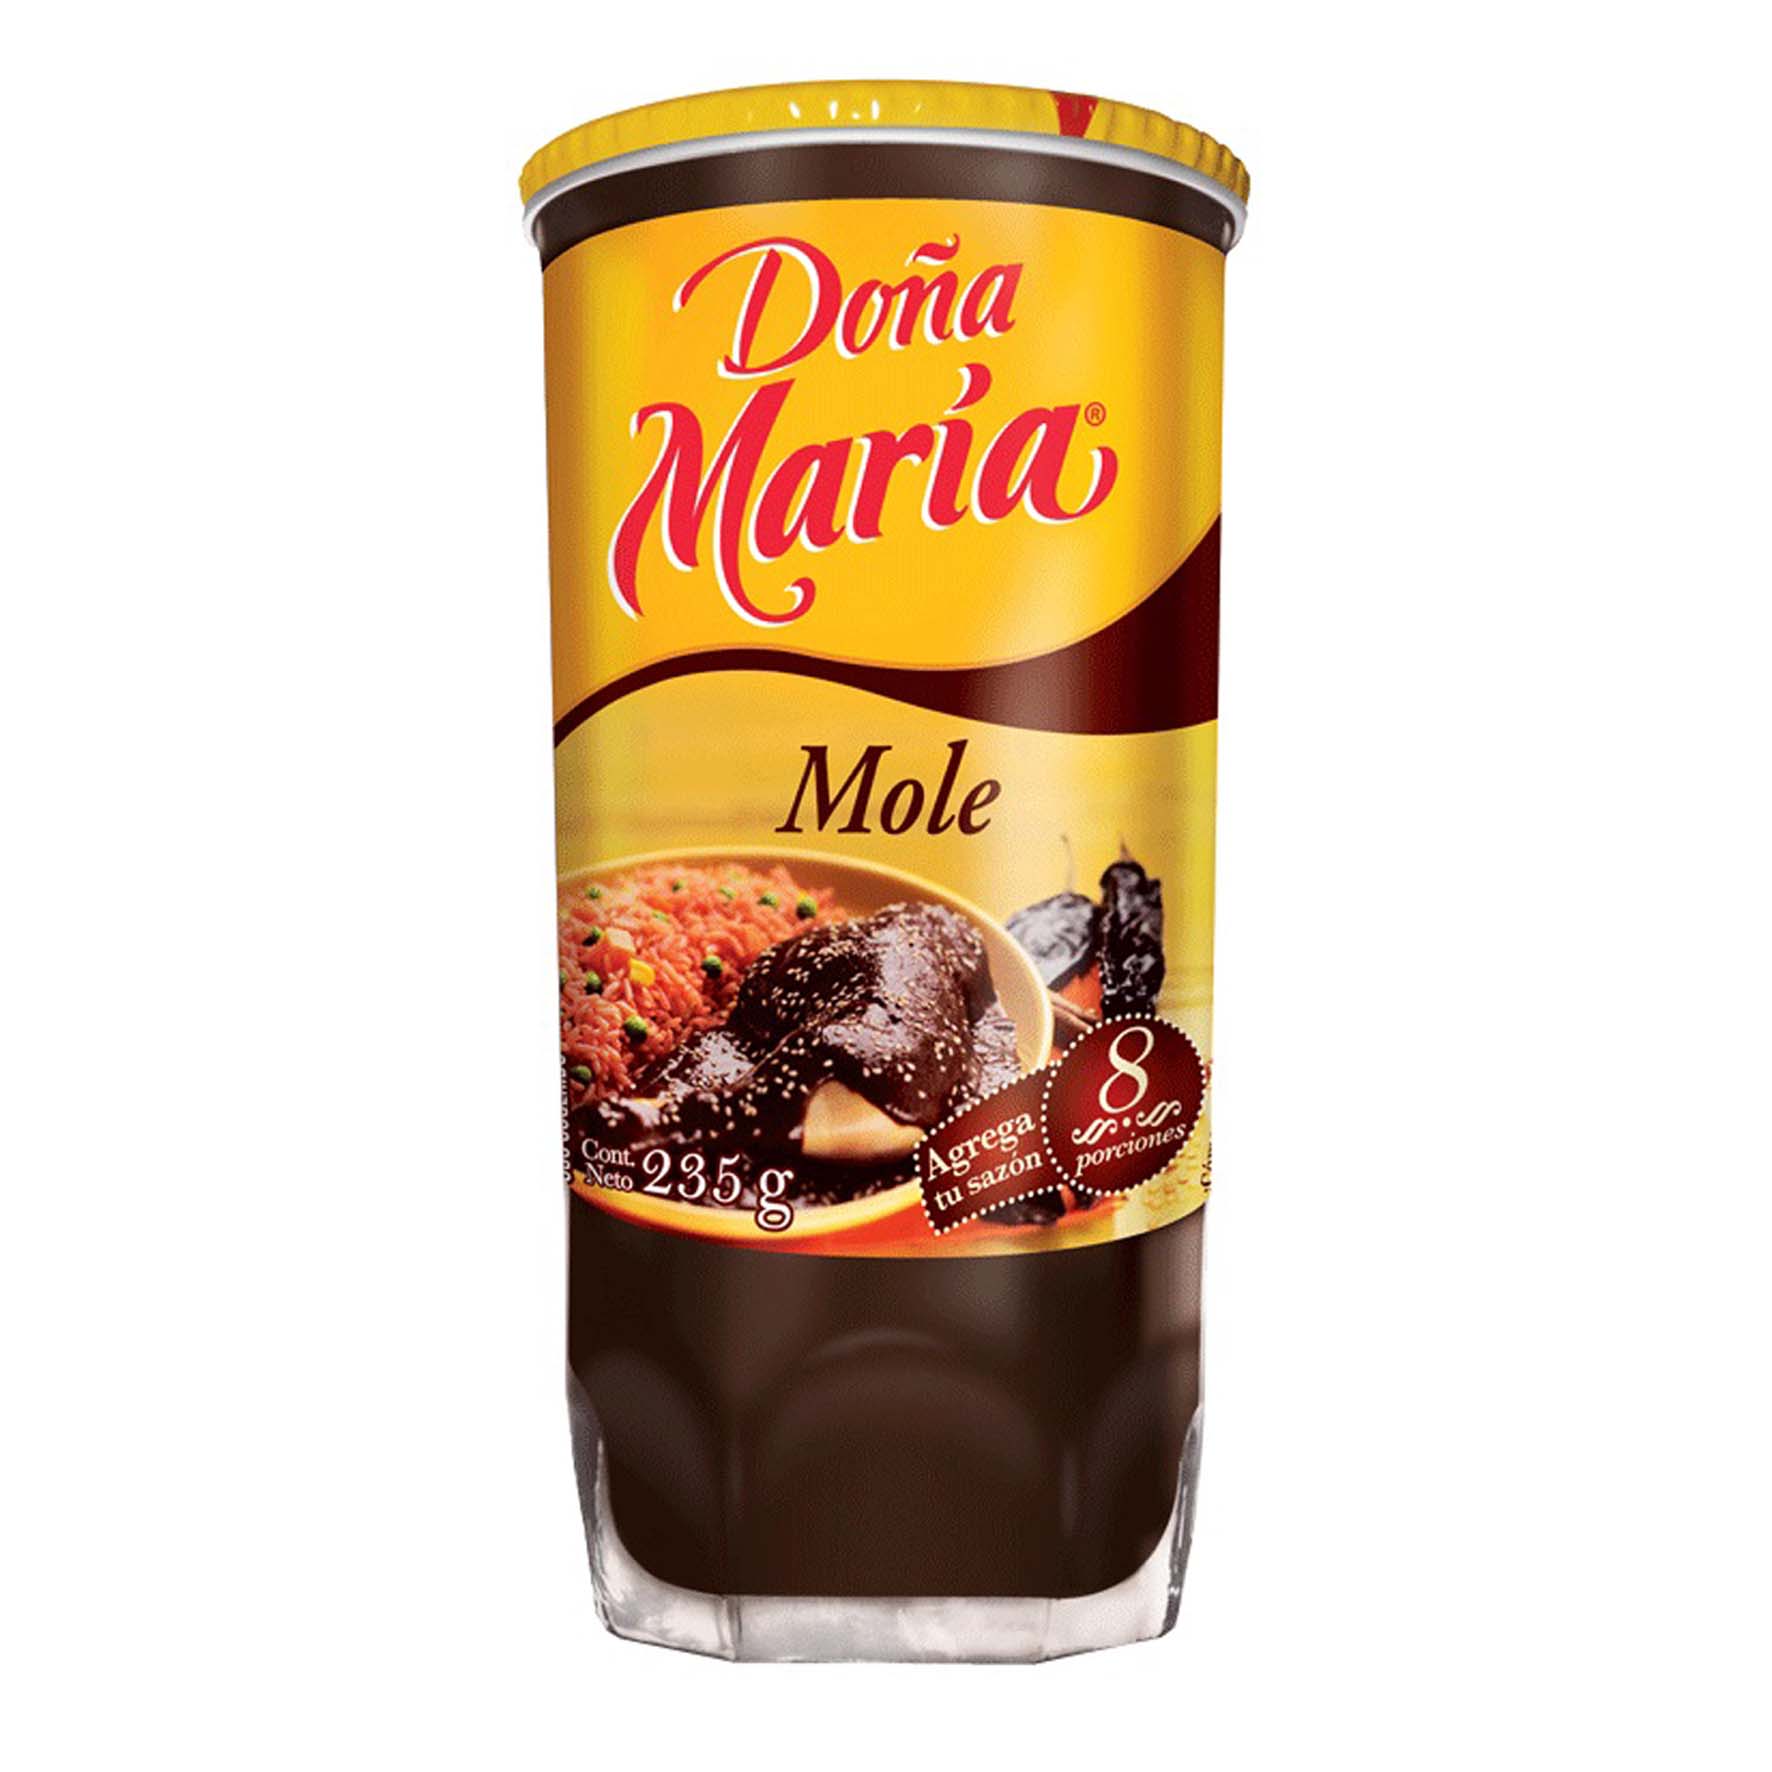 Doña maria mole pasta vaso 24/235g